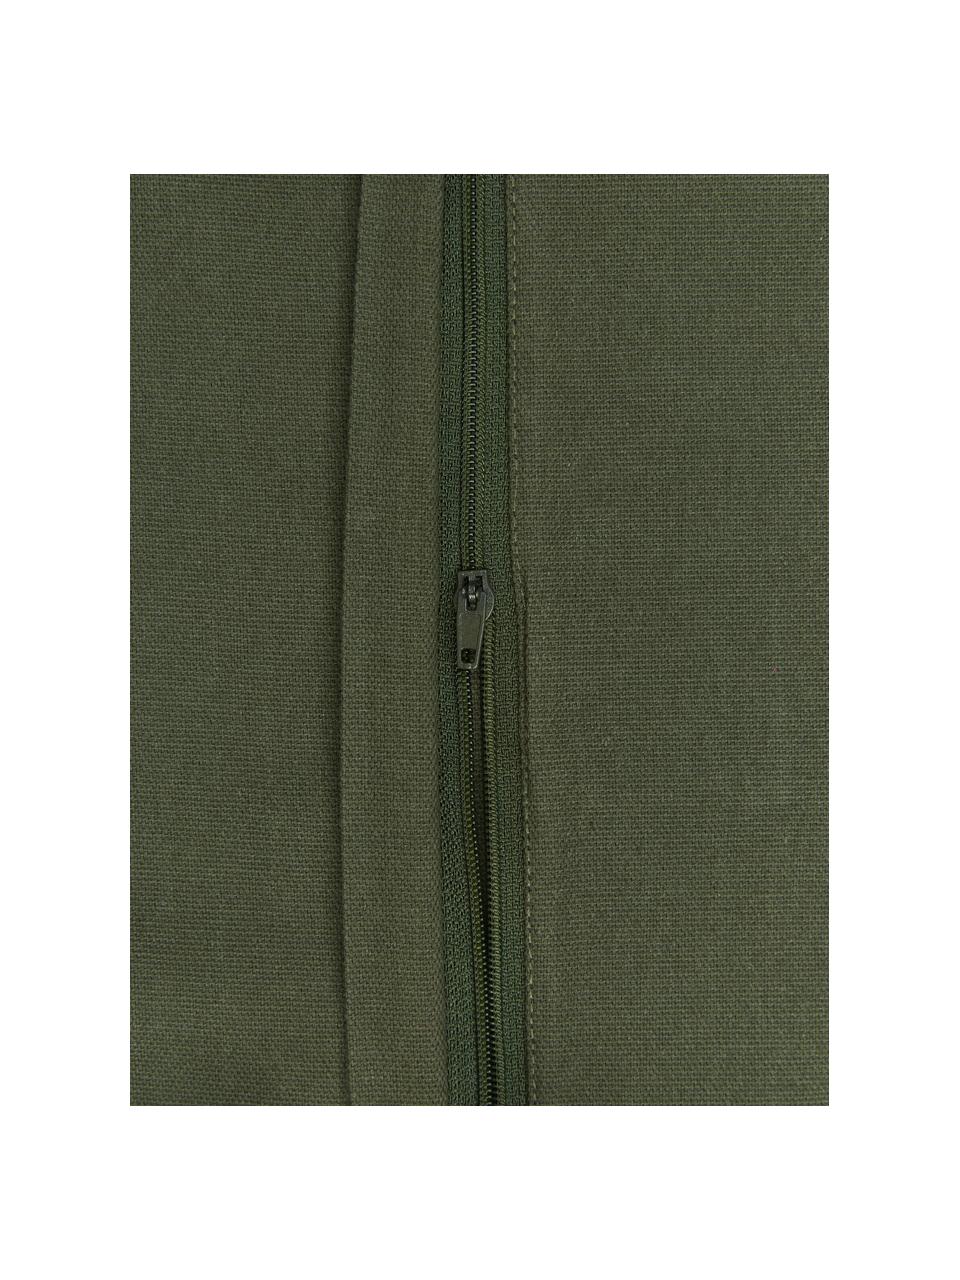 Kissenhülle Shylo in Dunkelgrün mit Quasten, 100% Baumwolle, Grün, B 40 x L 40 cm